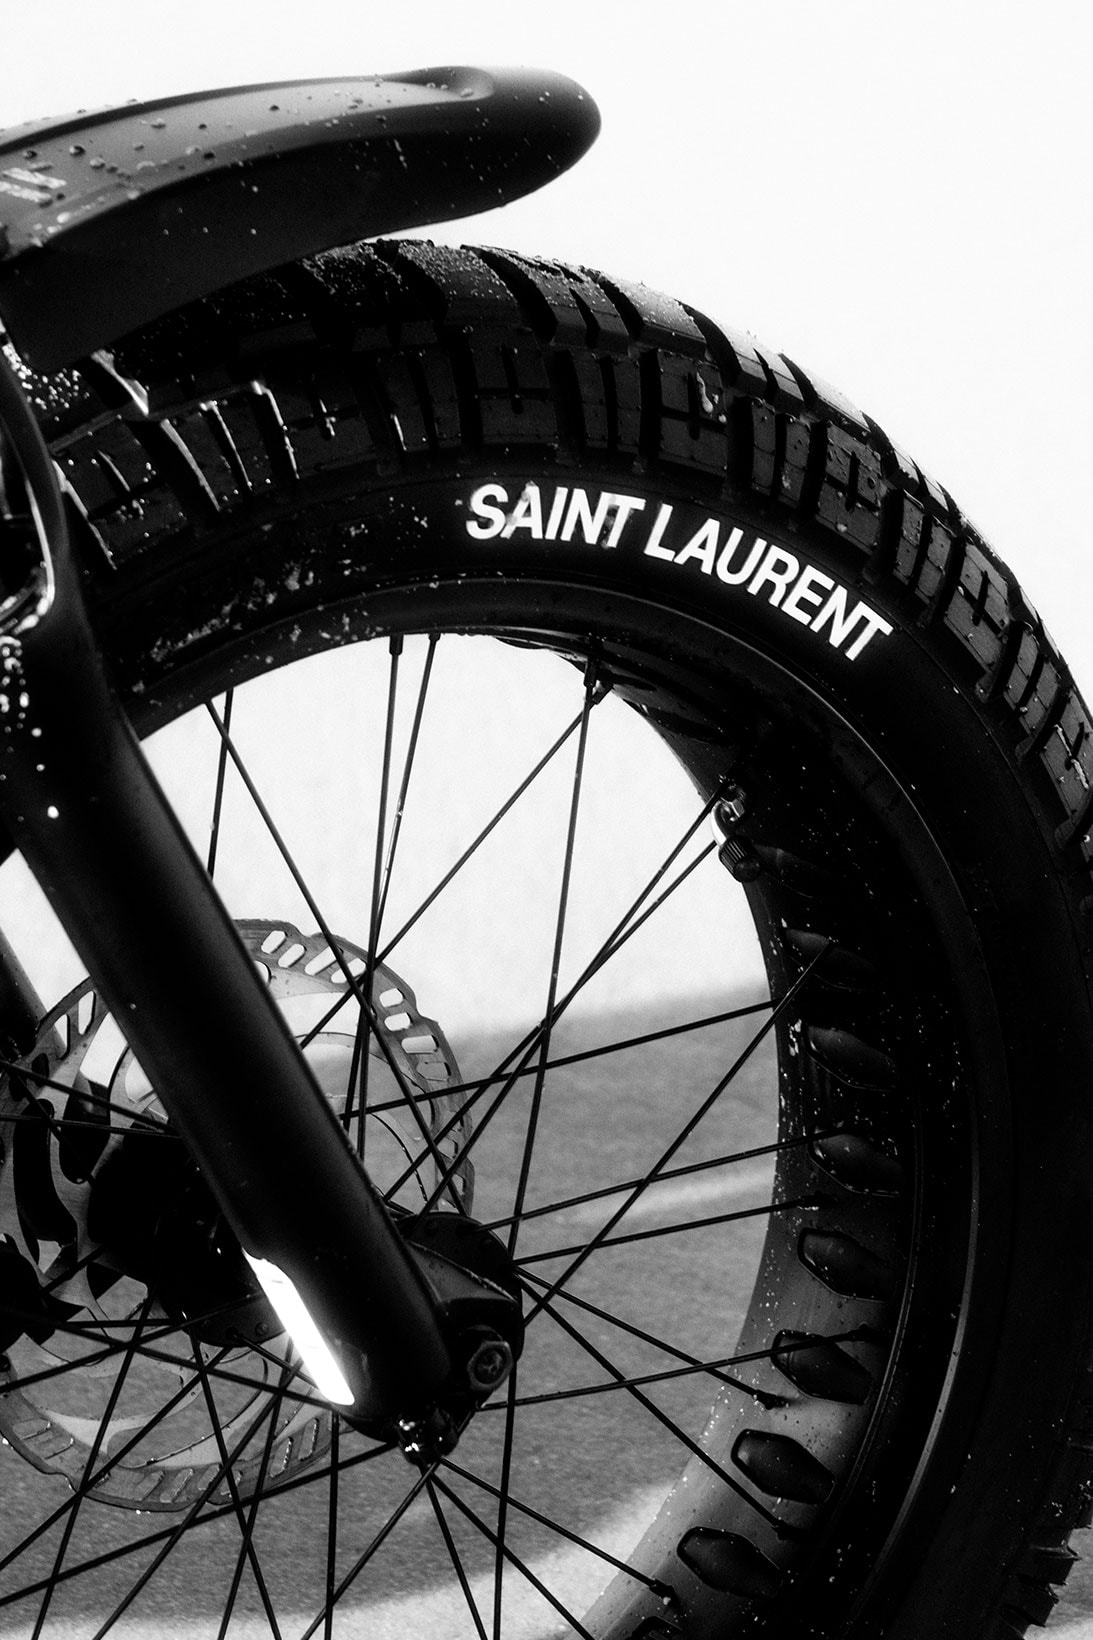 Saint Laurent Rive Droite The Ride Collection